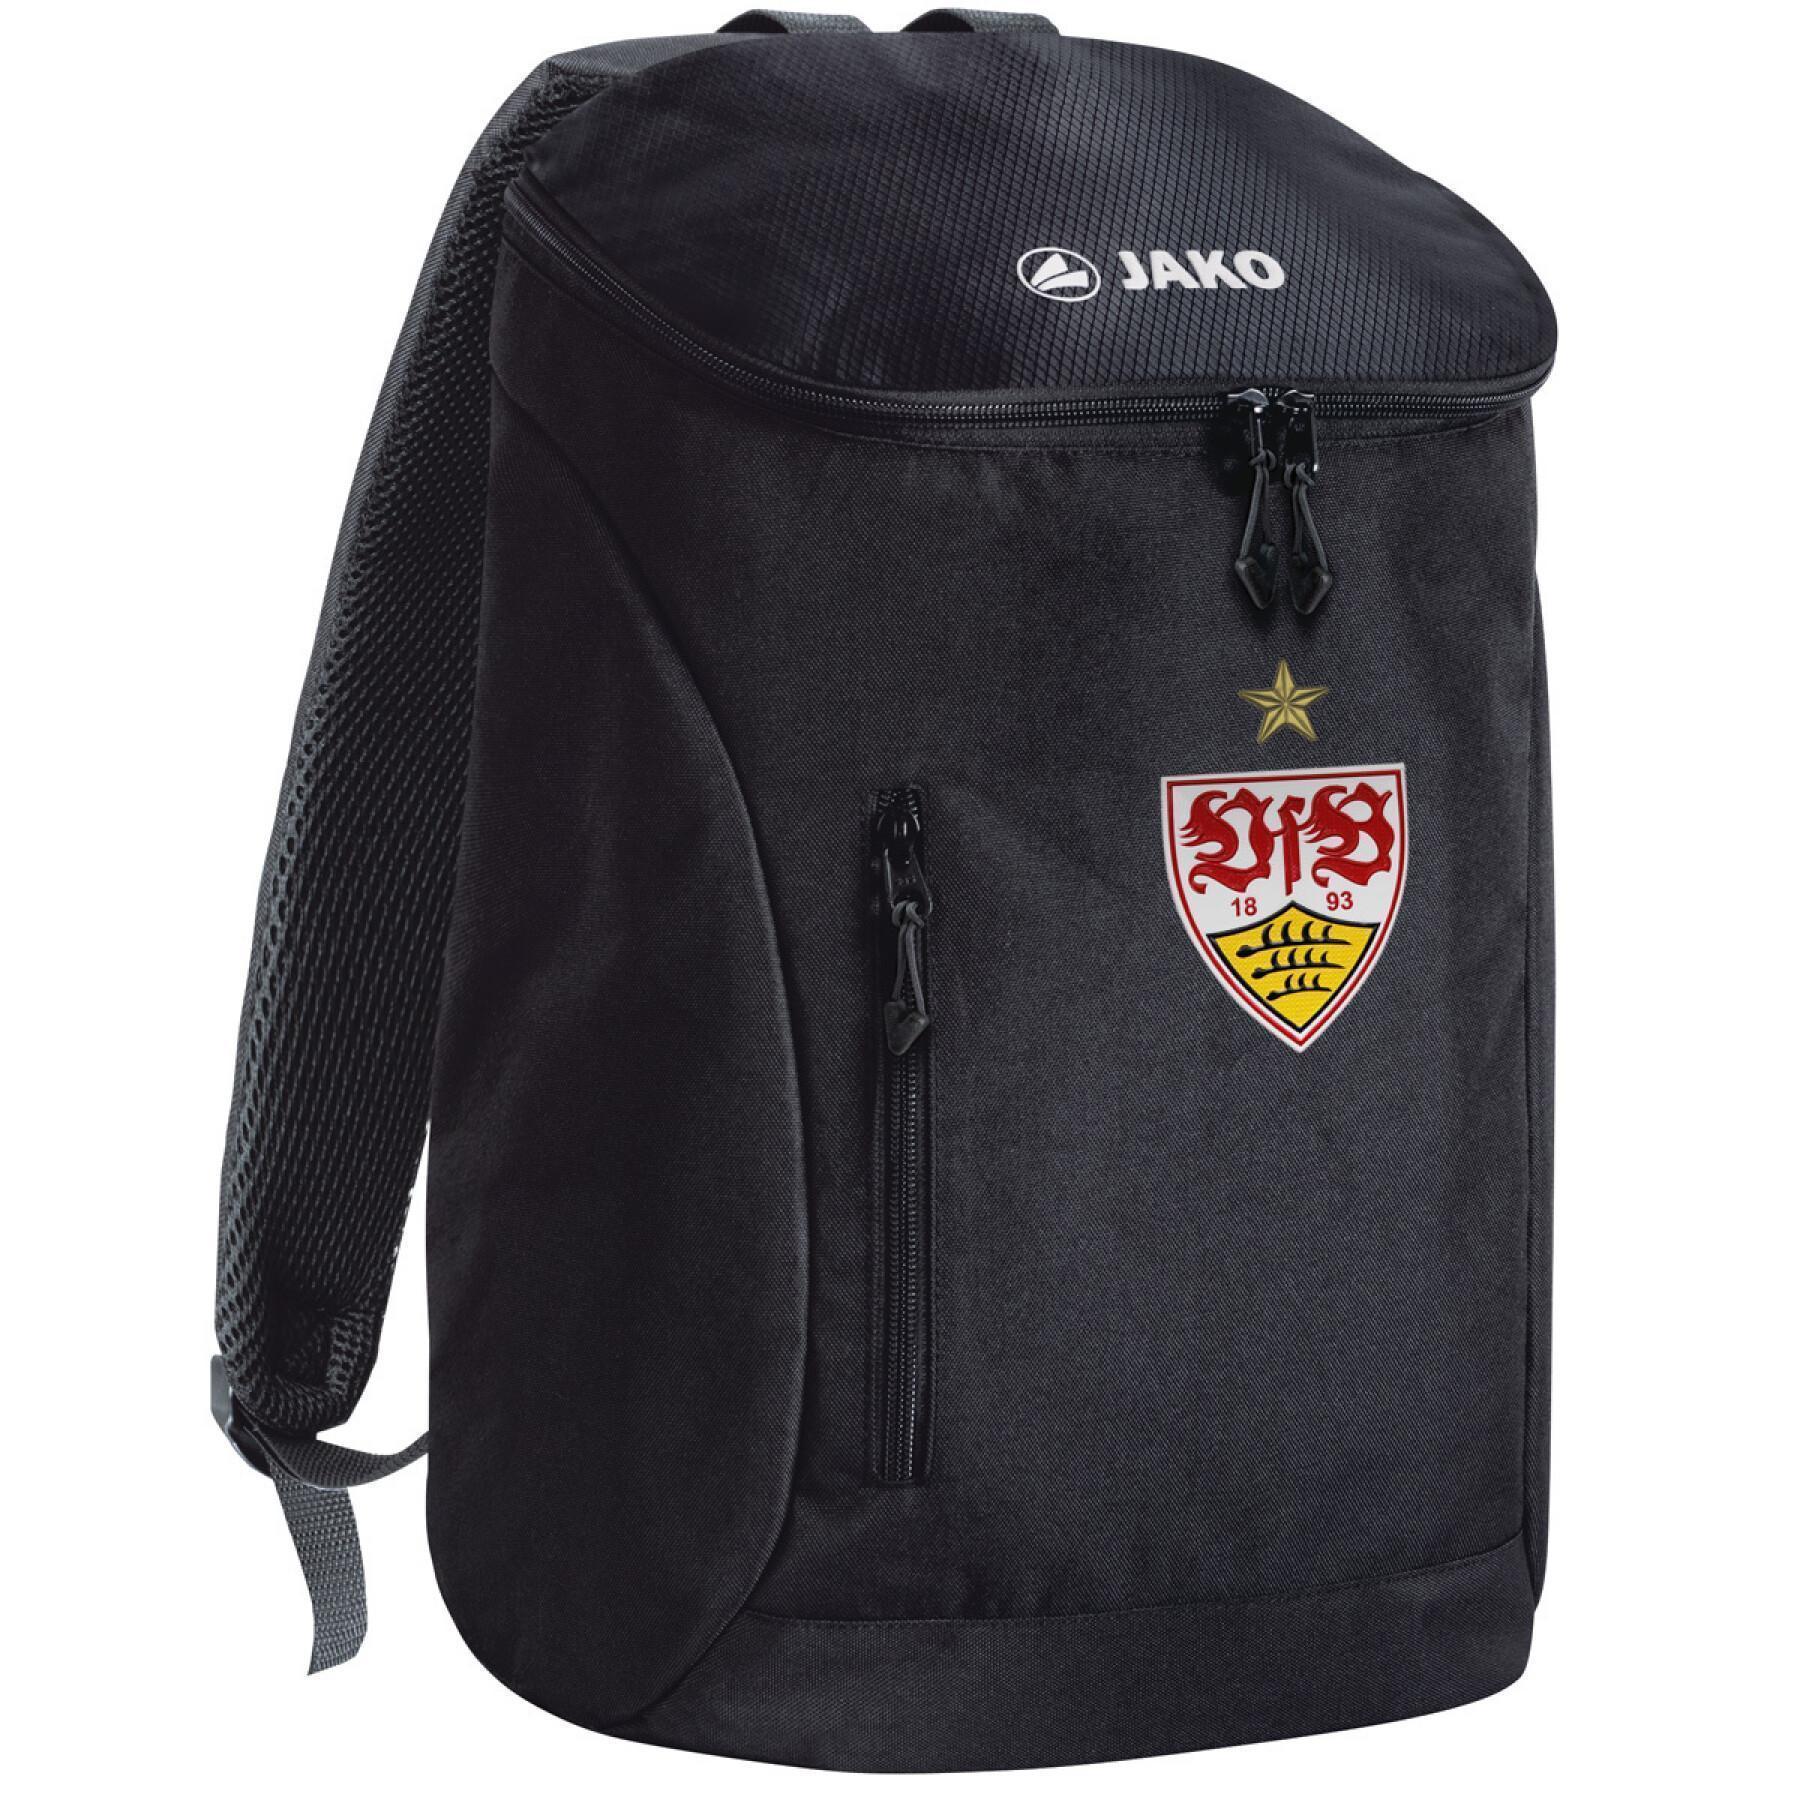 Backpack VfB Stuttgart 2021/22